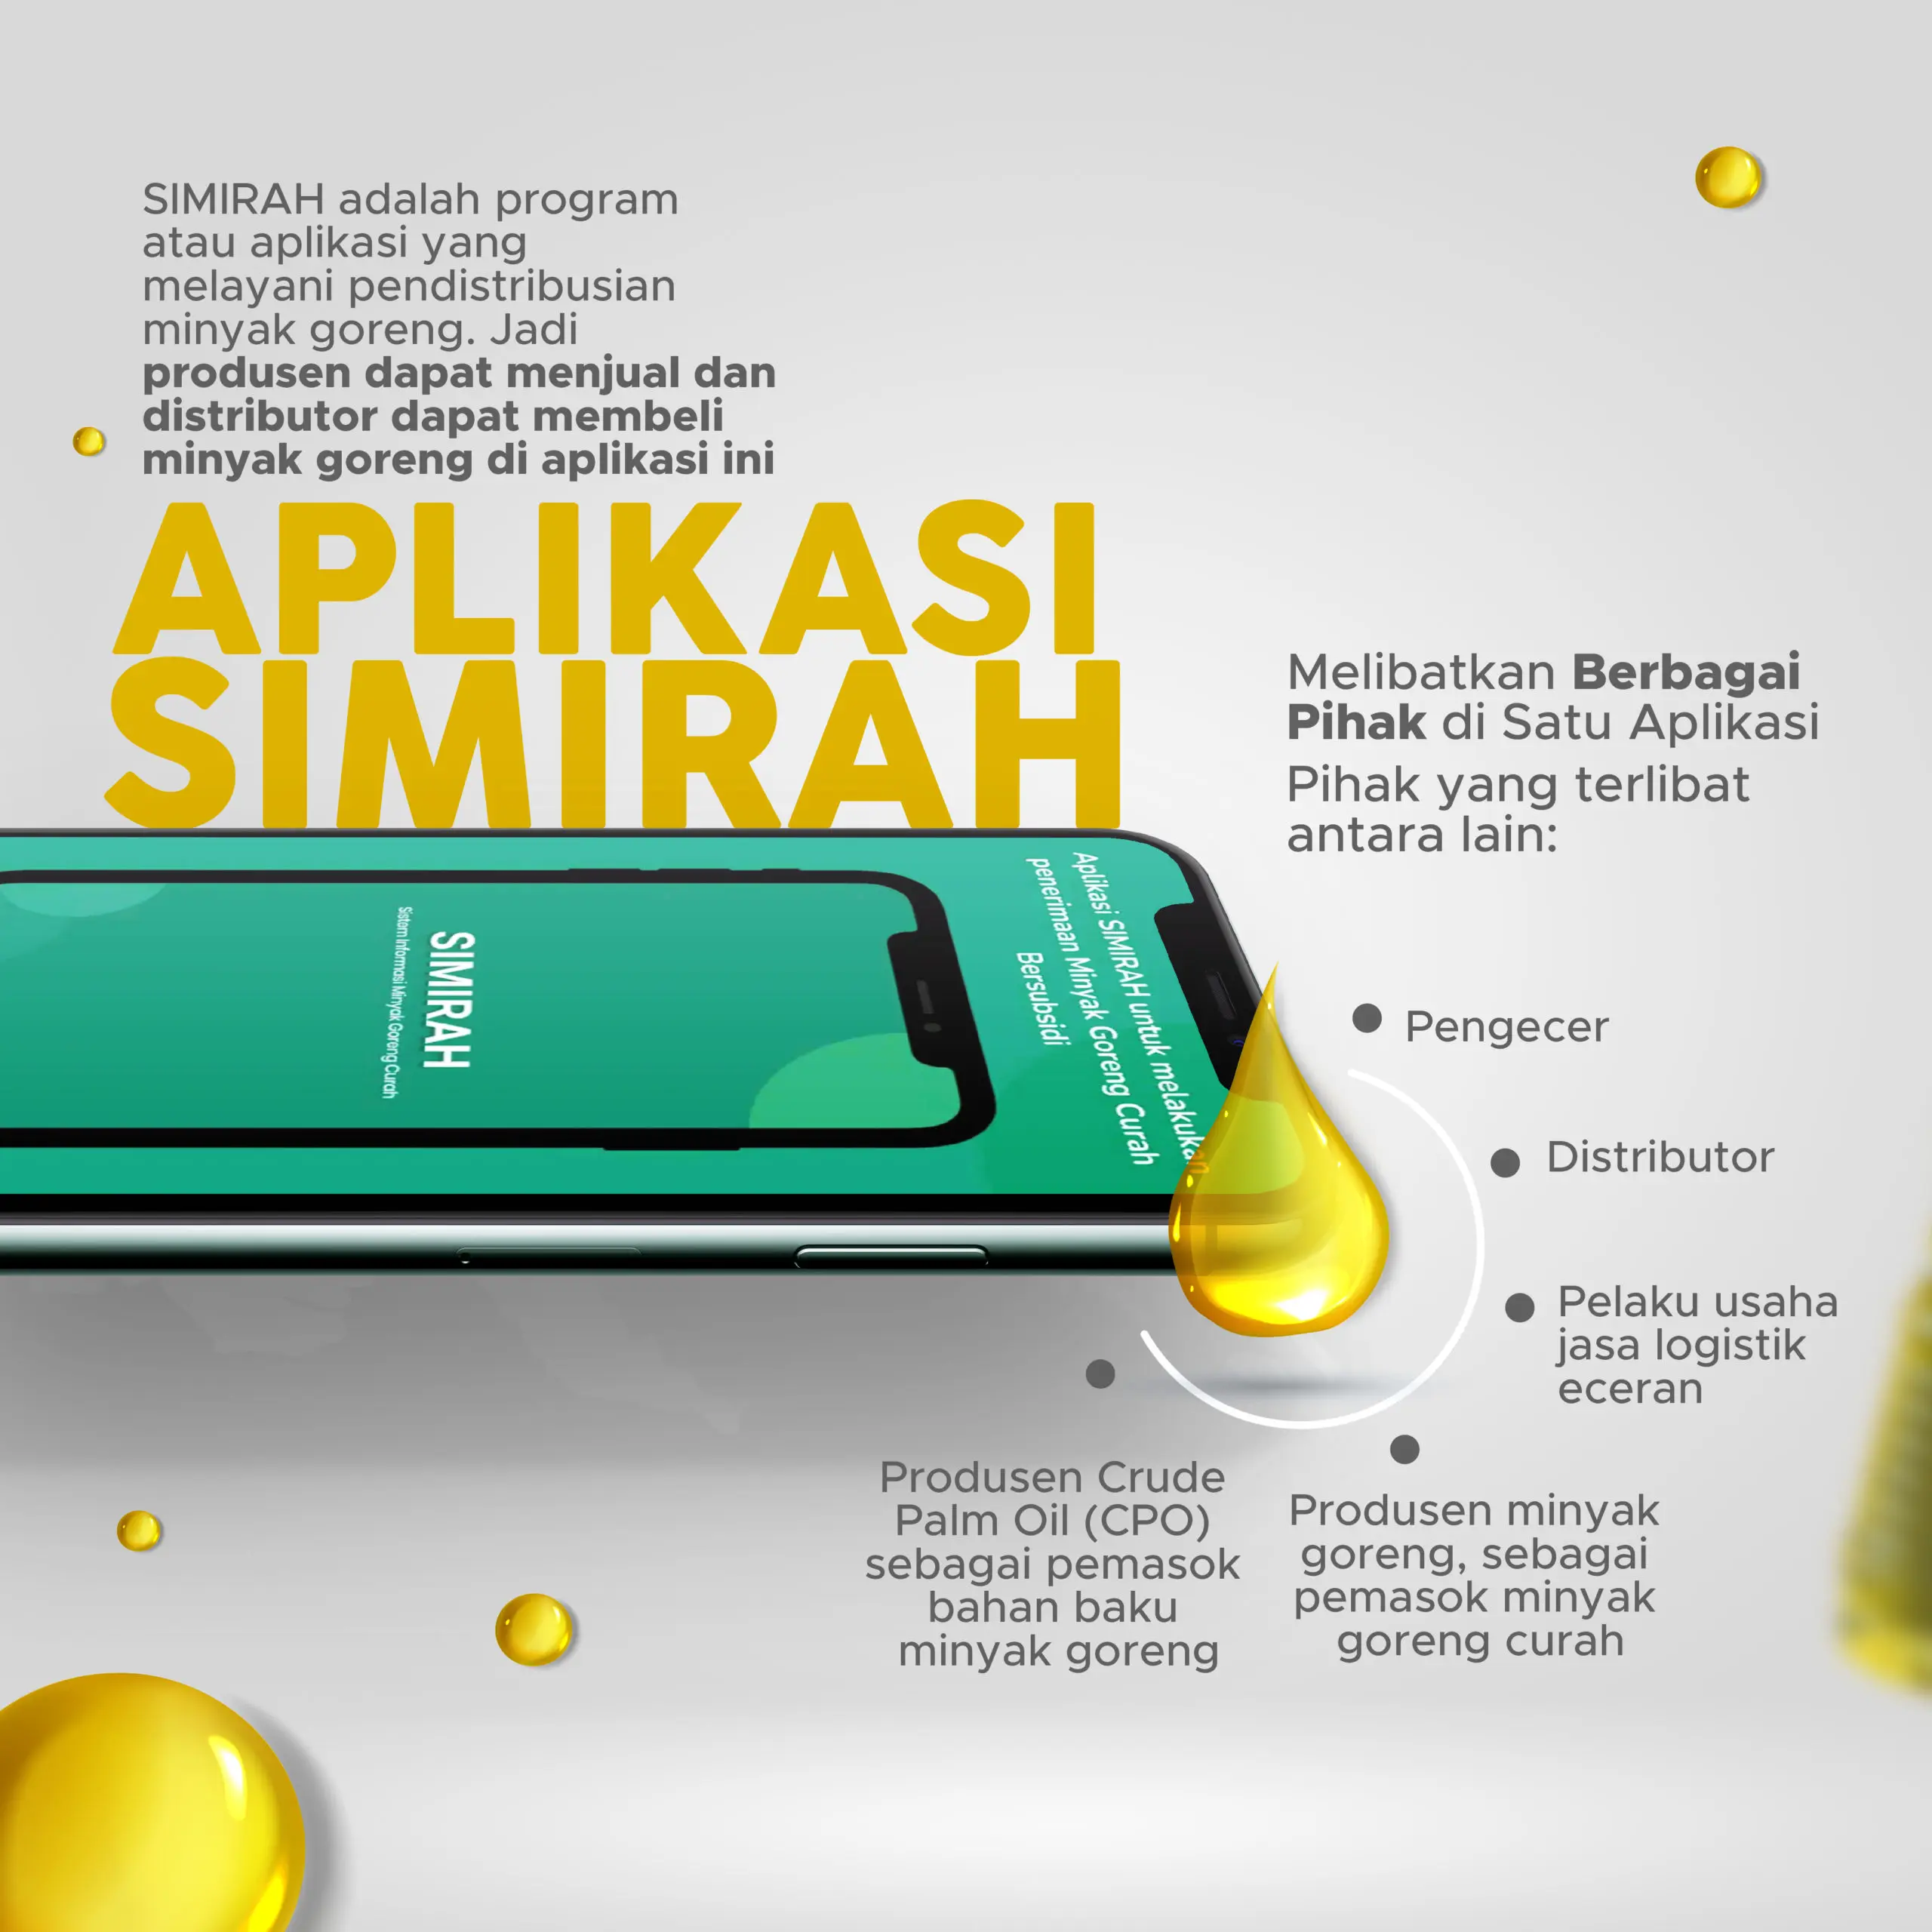 SIMIRAH, Program Minyak Goreng Curah Berbasis Digital